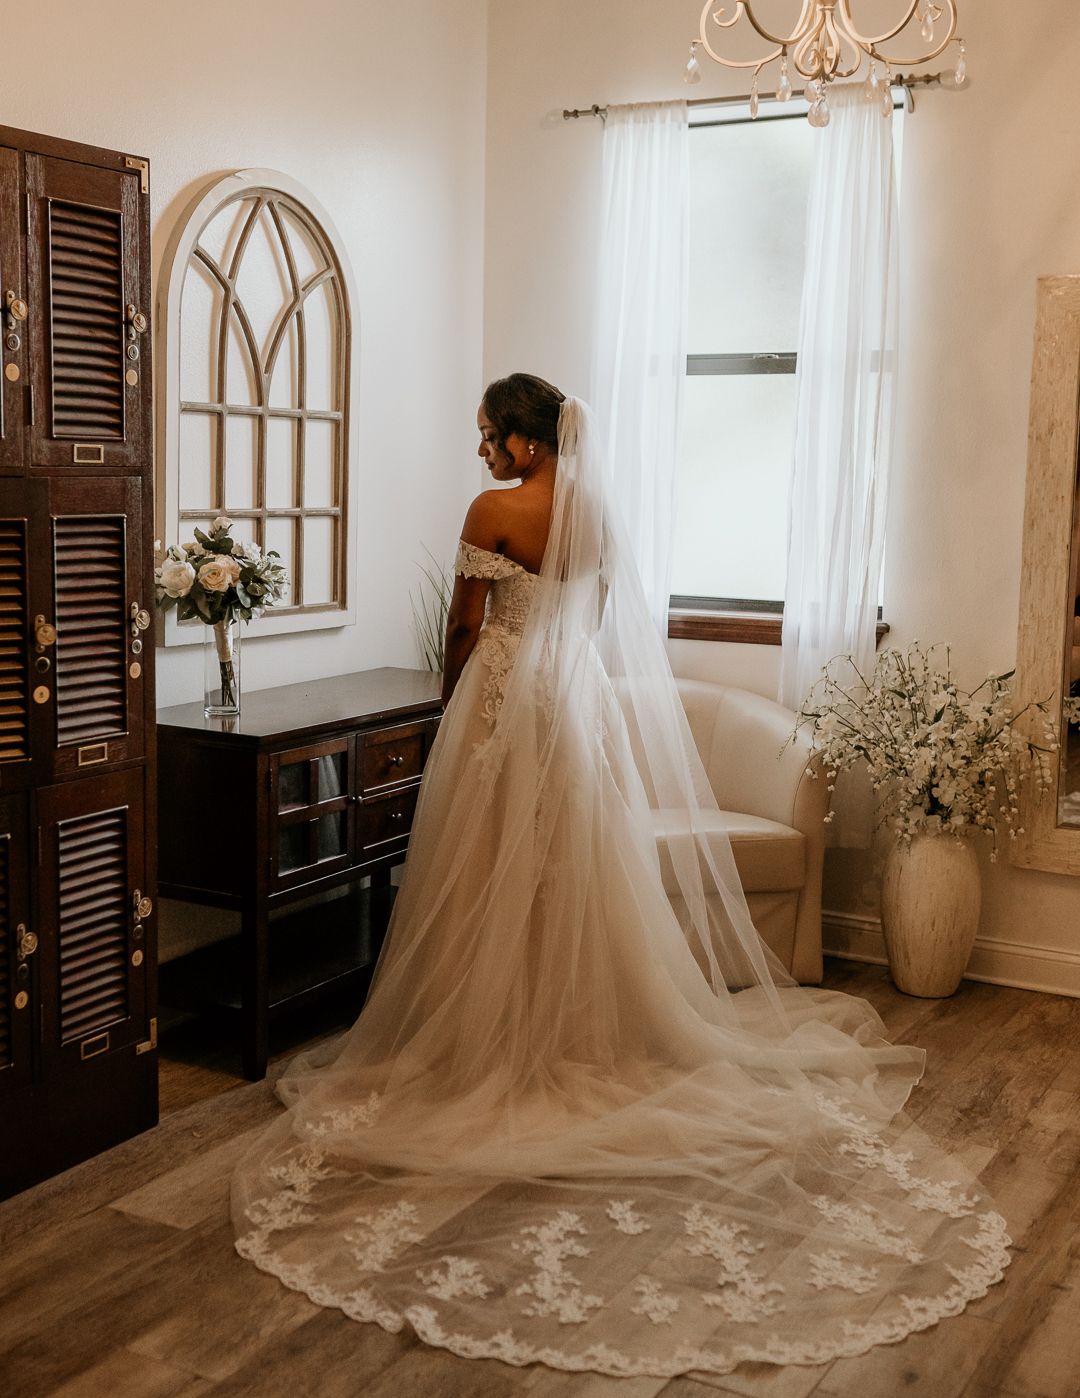 backshot of bride in wedding dress